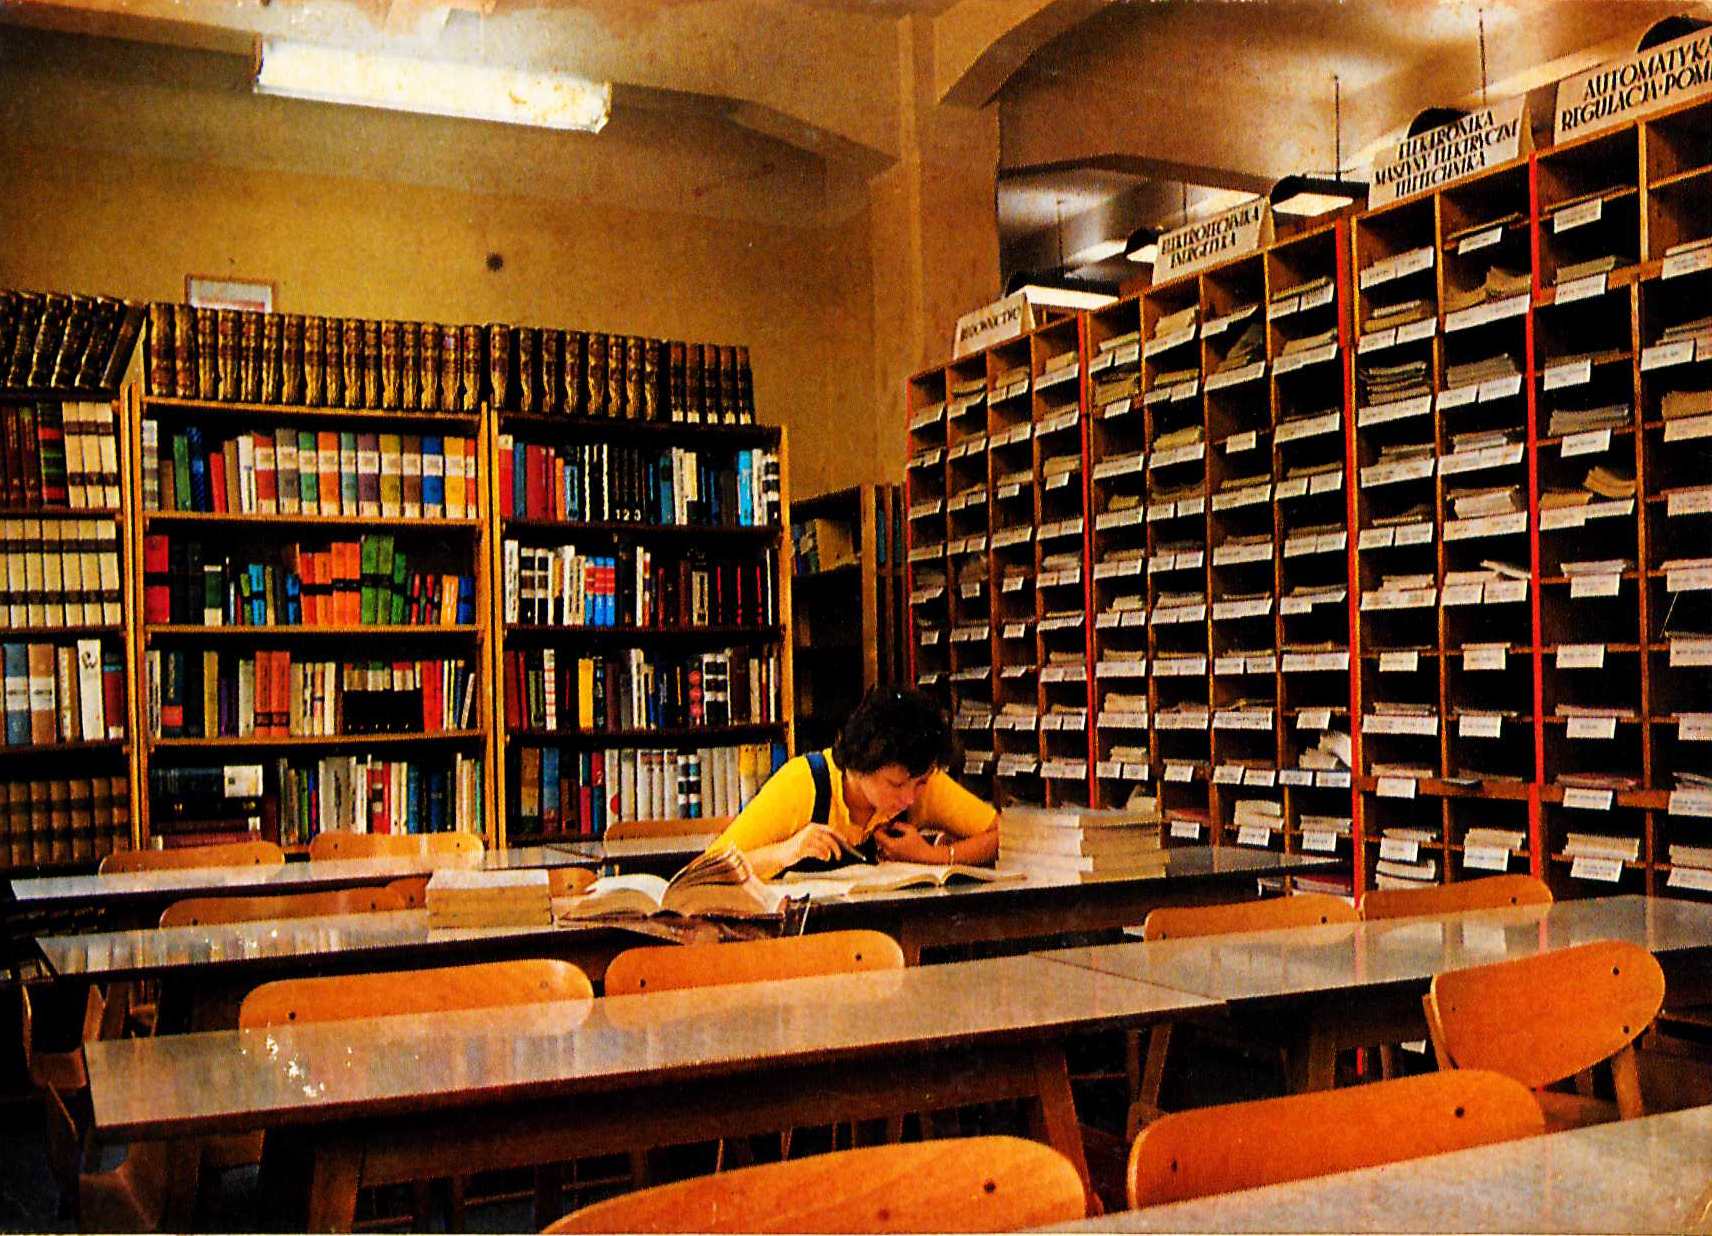 Pomieszczenie z dwoma ścianami regałów książek. Stojące w rzędach stoły z krzesłami, przy jednym z nich siedzi pochylona nad książkami kobieta.